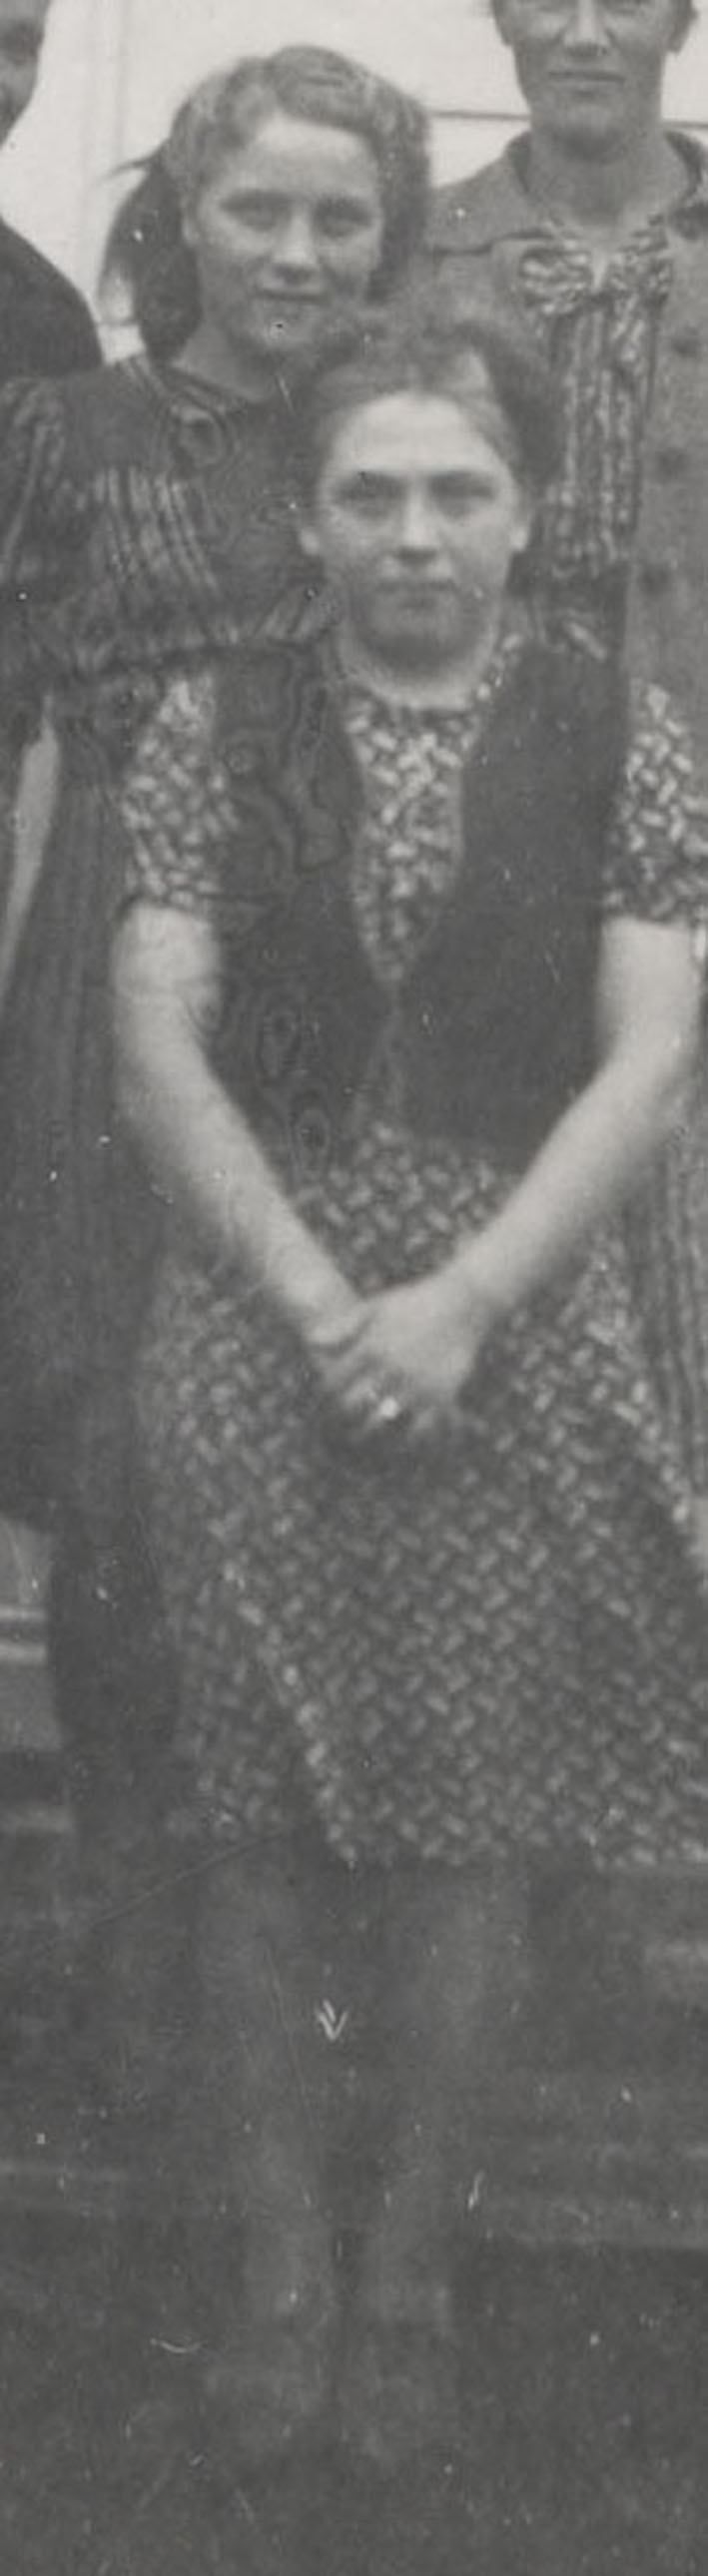 Elma ja Esteri sisar Paavolassa v 1942.